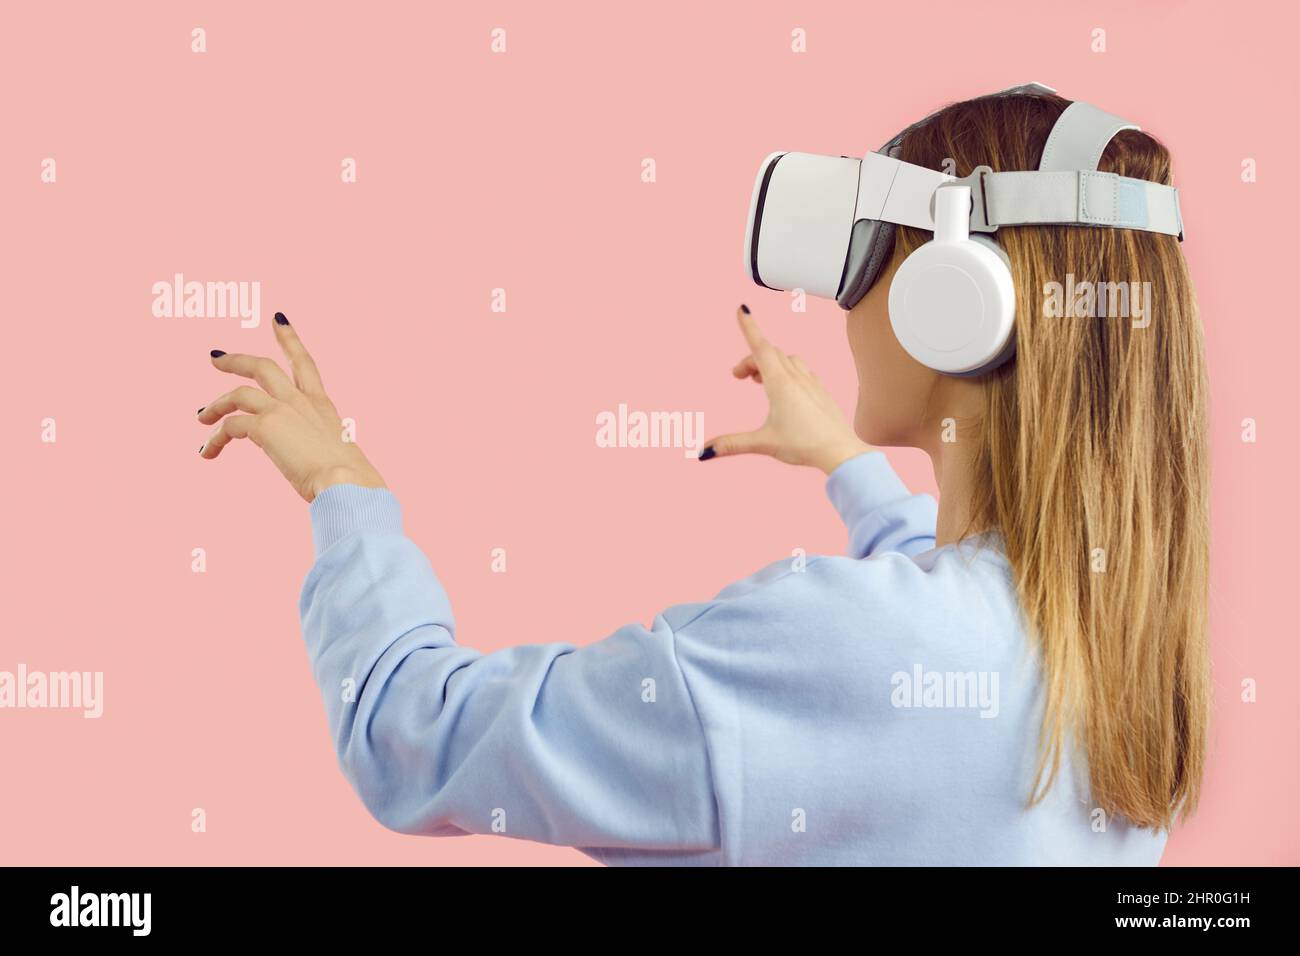 Fille dans un casque innovant jouant à des jeux vidéo, faisant l'expérience de VR, touchant des objets virtuels Banque D'Images